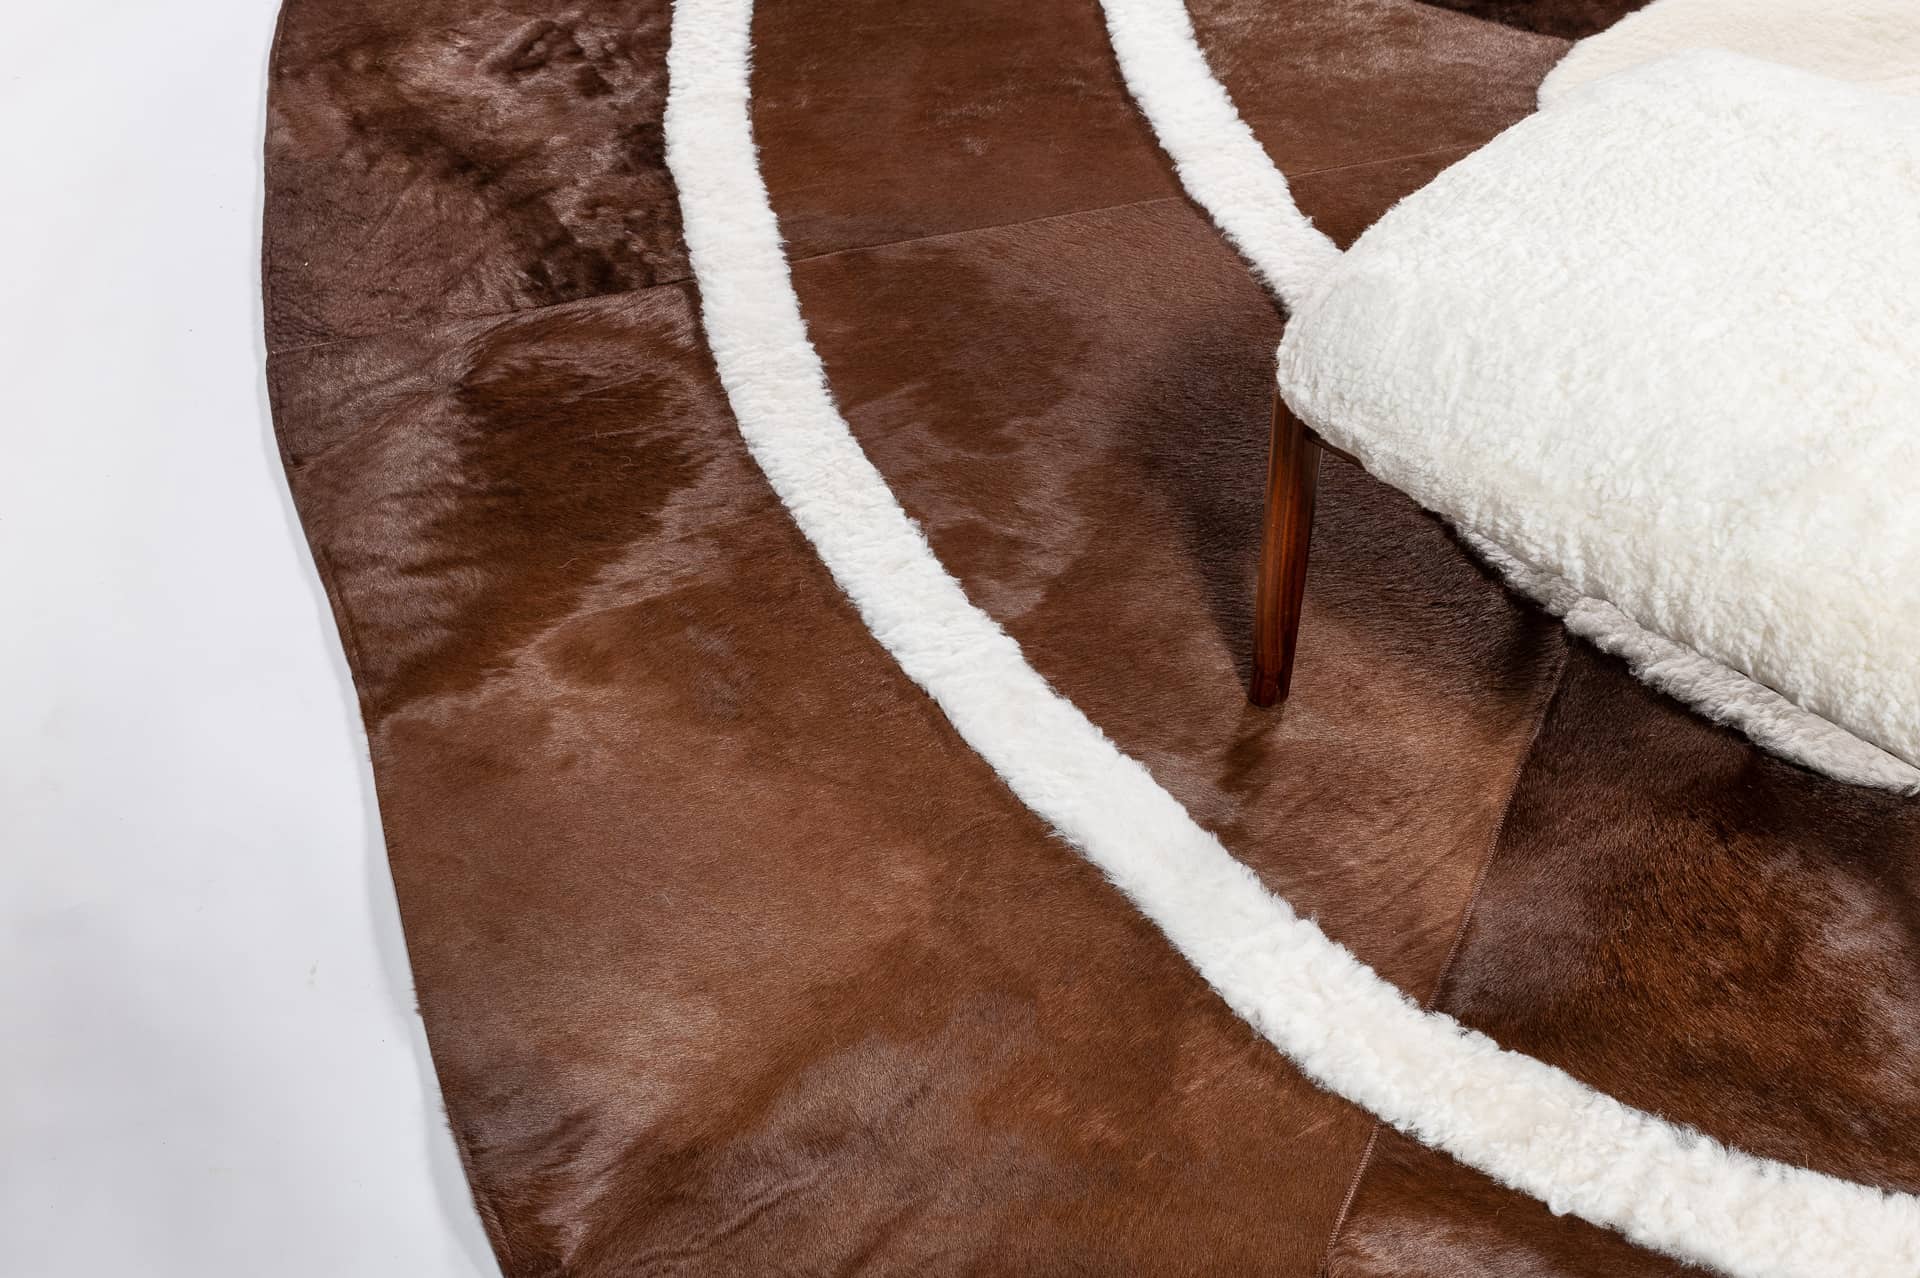 Une jolie forme organique pour ce modèle exclusif de tapis en peau de vache marron et bordures de mouton blanc rasé.